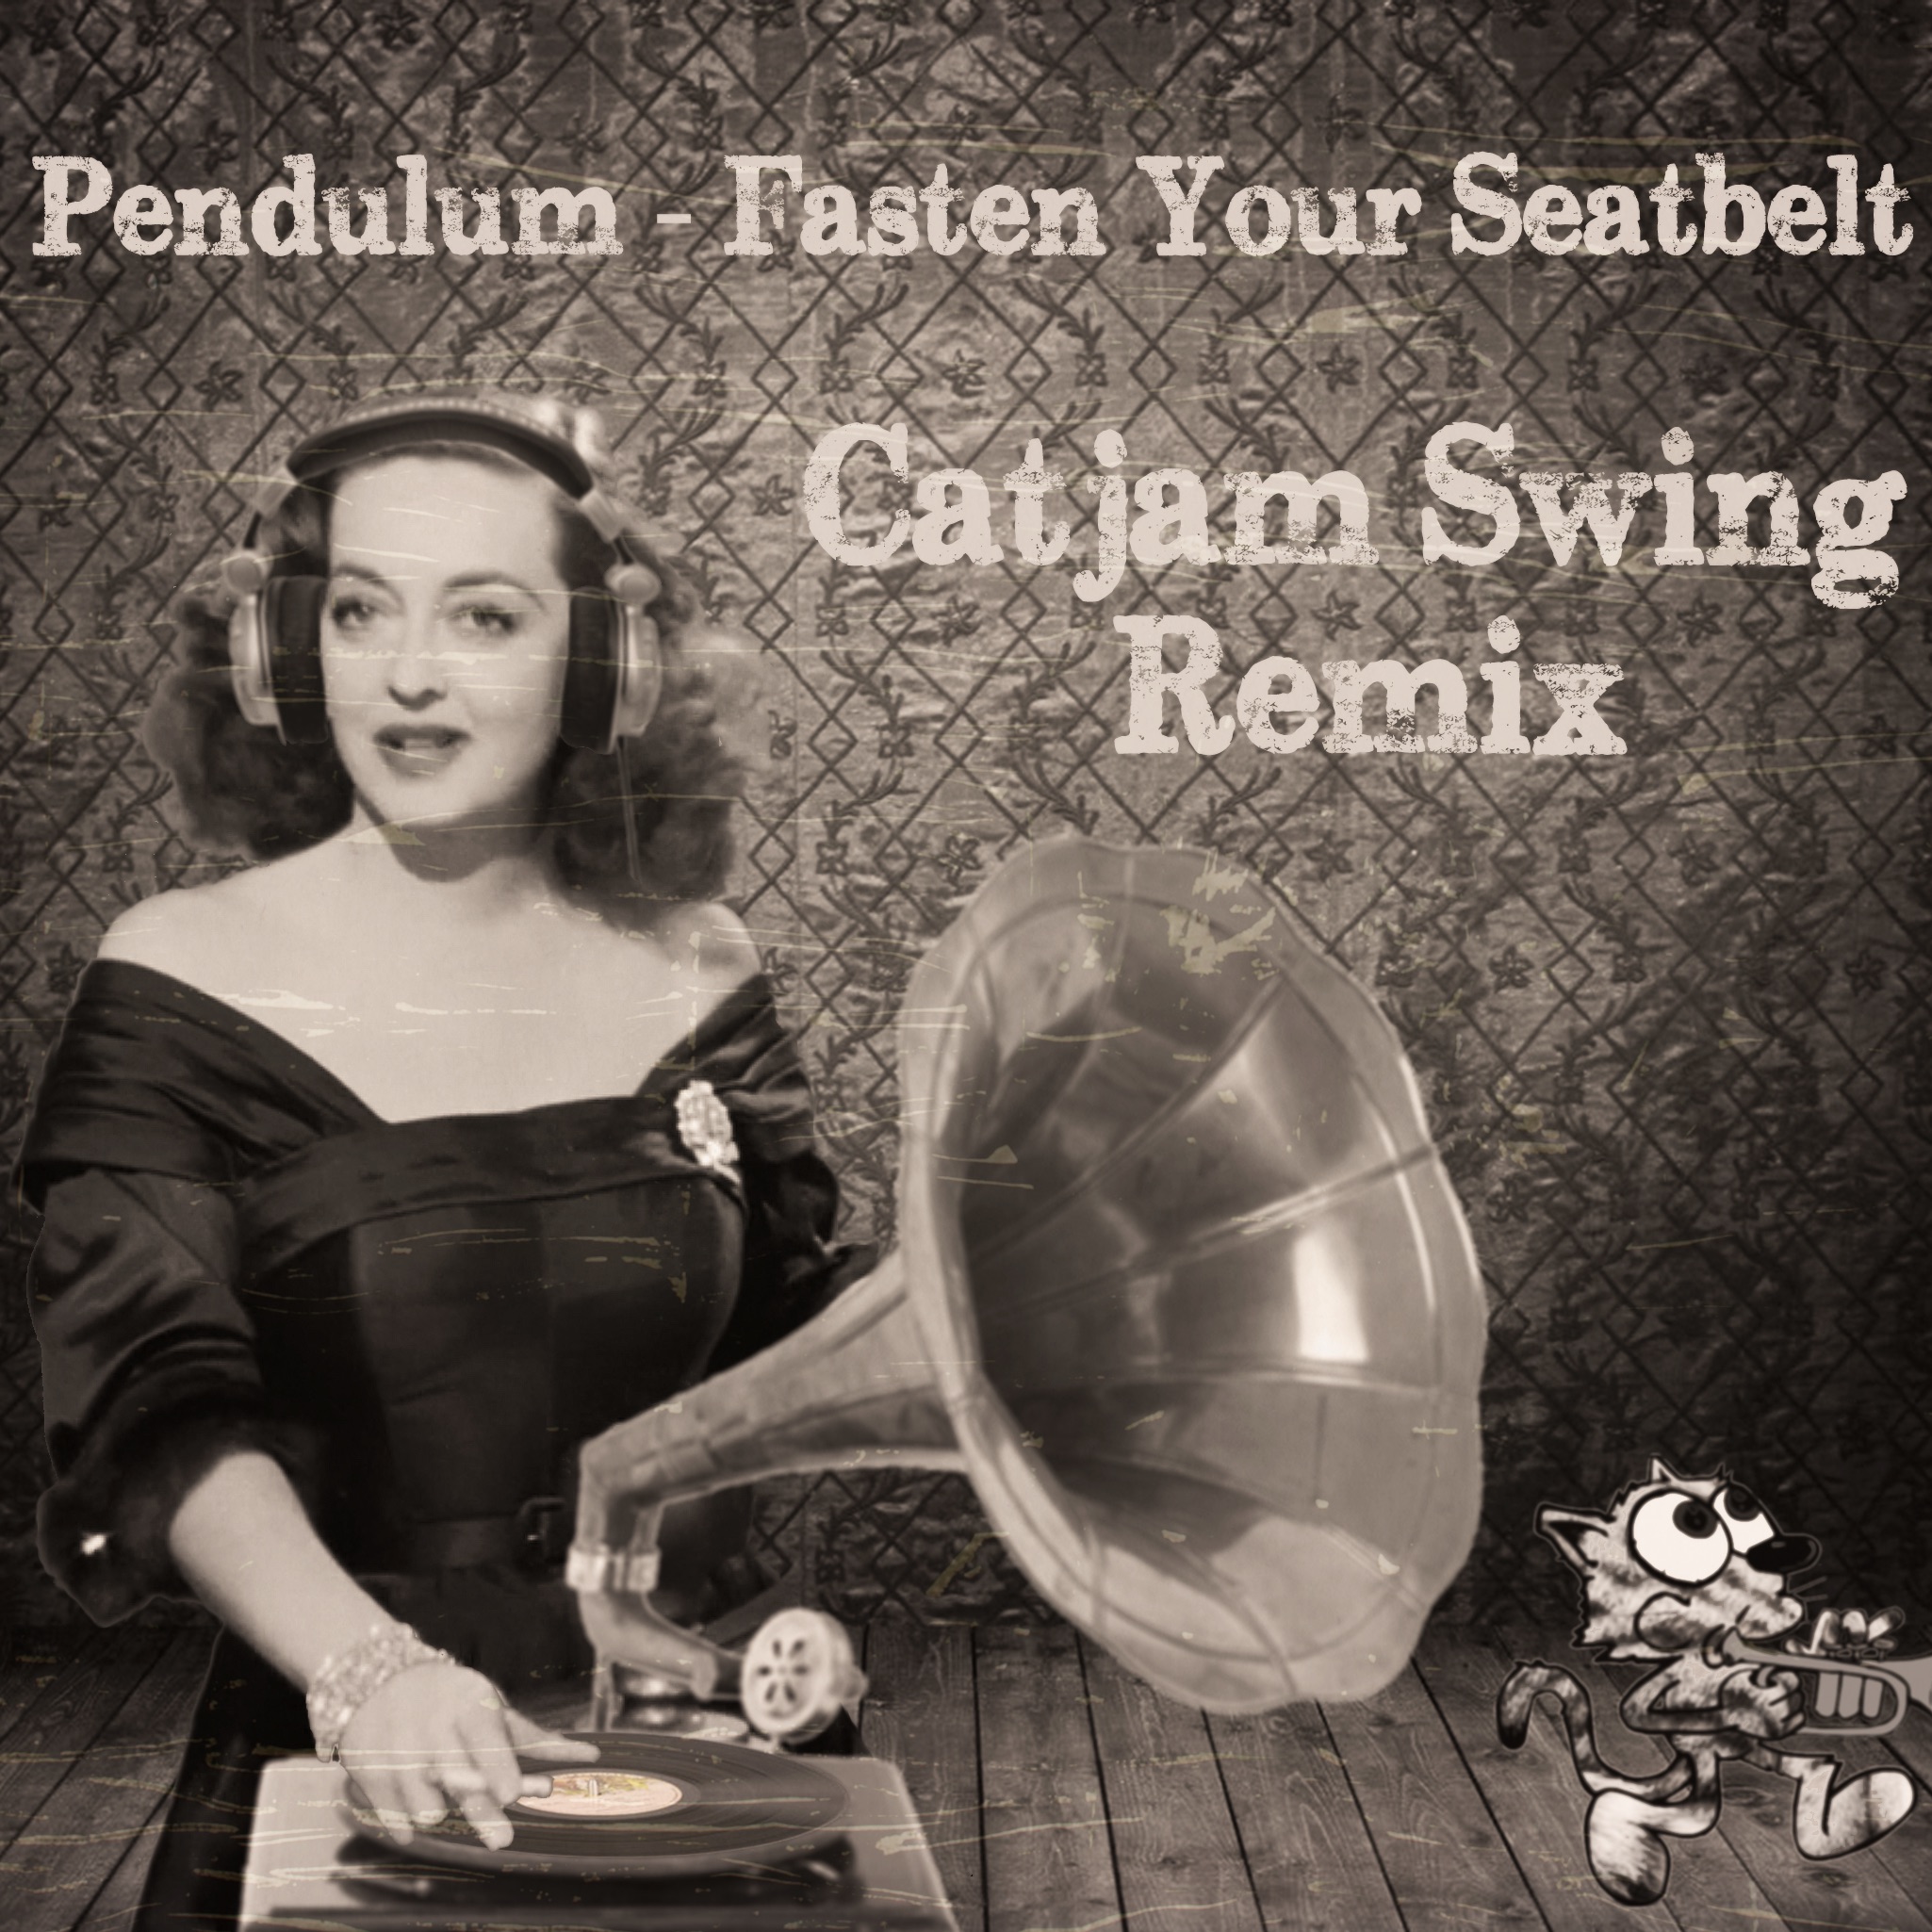 ഡൗൺലോഡ് Fasten Your Seatbelt (Catjam Swing Bootleg) FREE DOWNLOAD!!